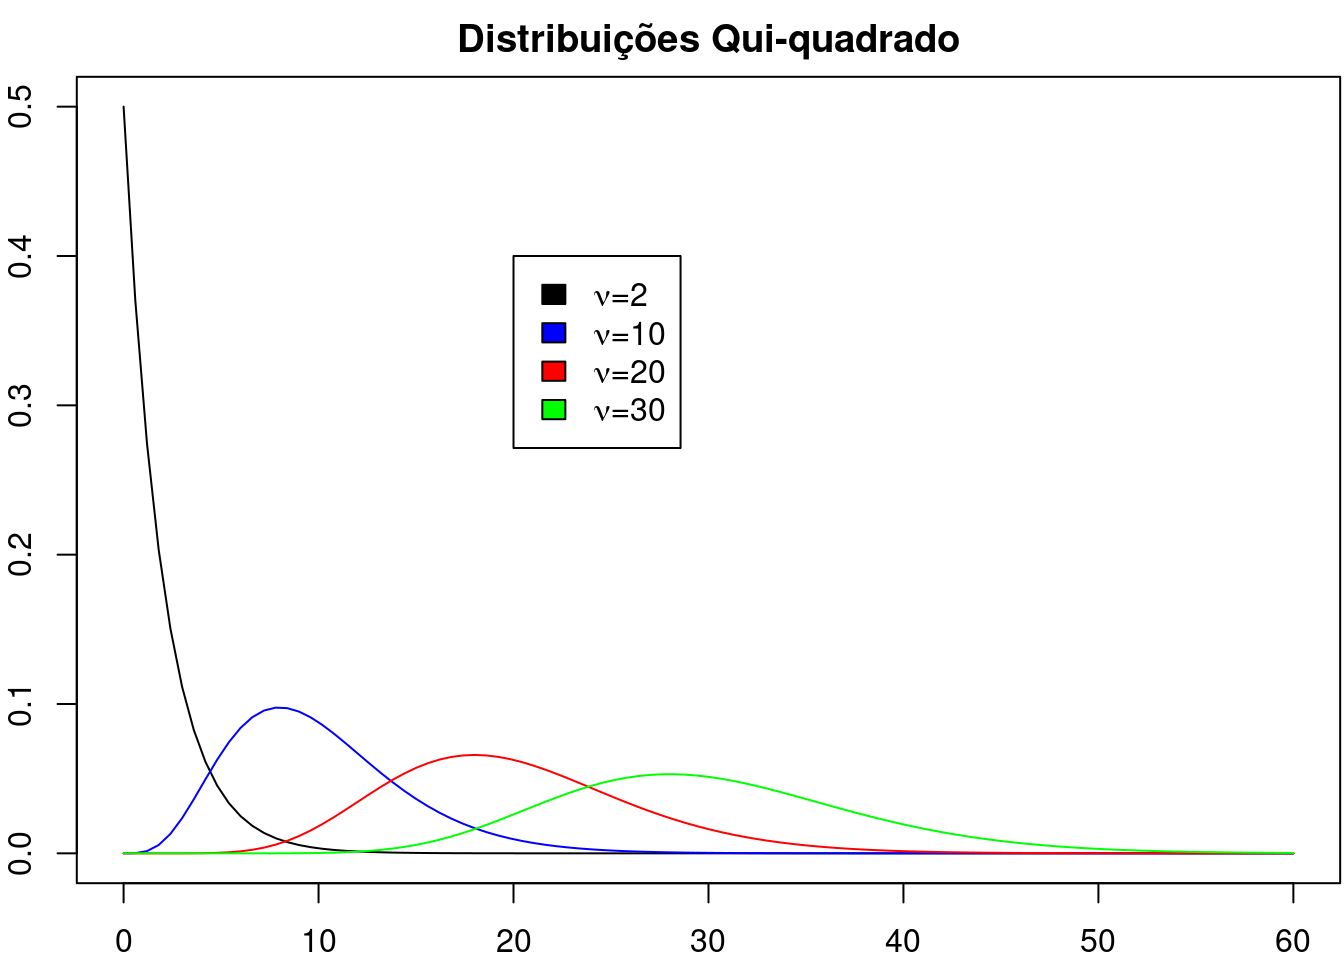 Gráficos de distribuições qui ao quadrado com graus de liberdade iguais a 2, 10, 20 e 30, respectivamente.